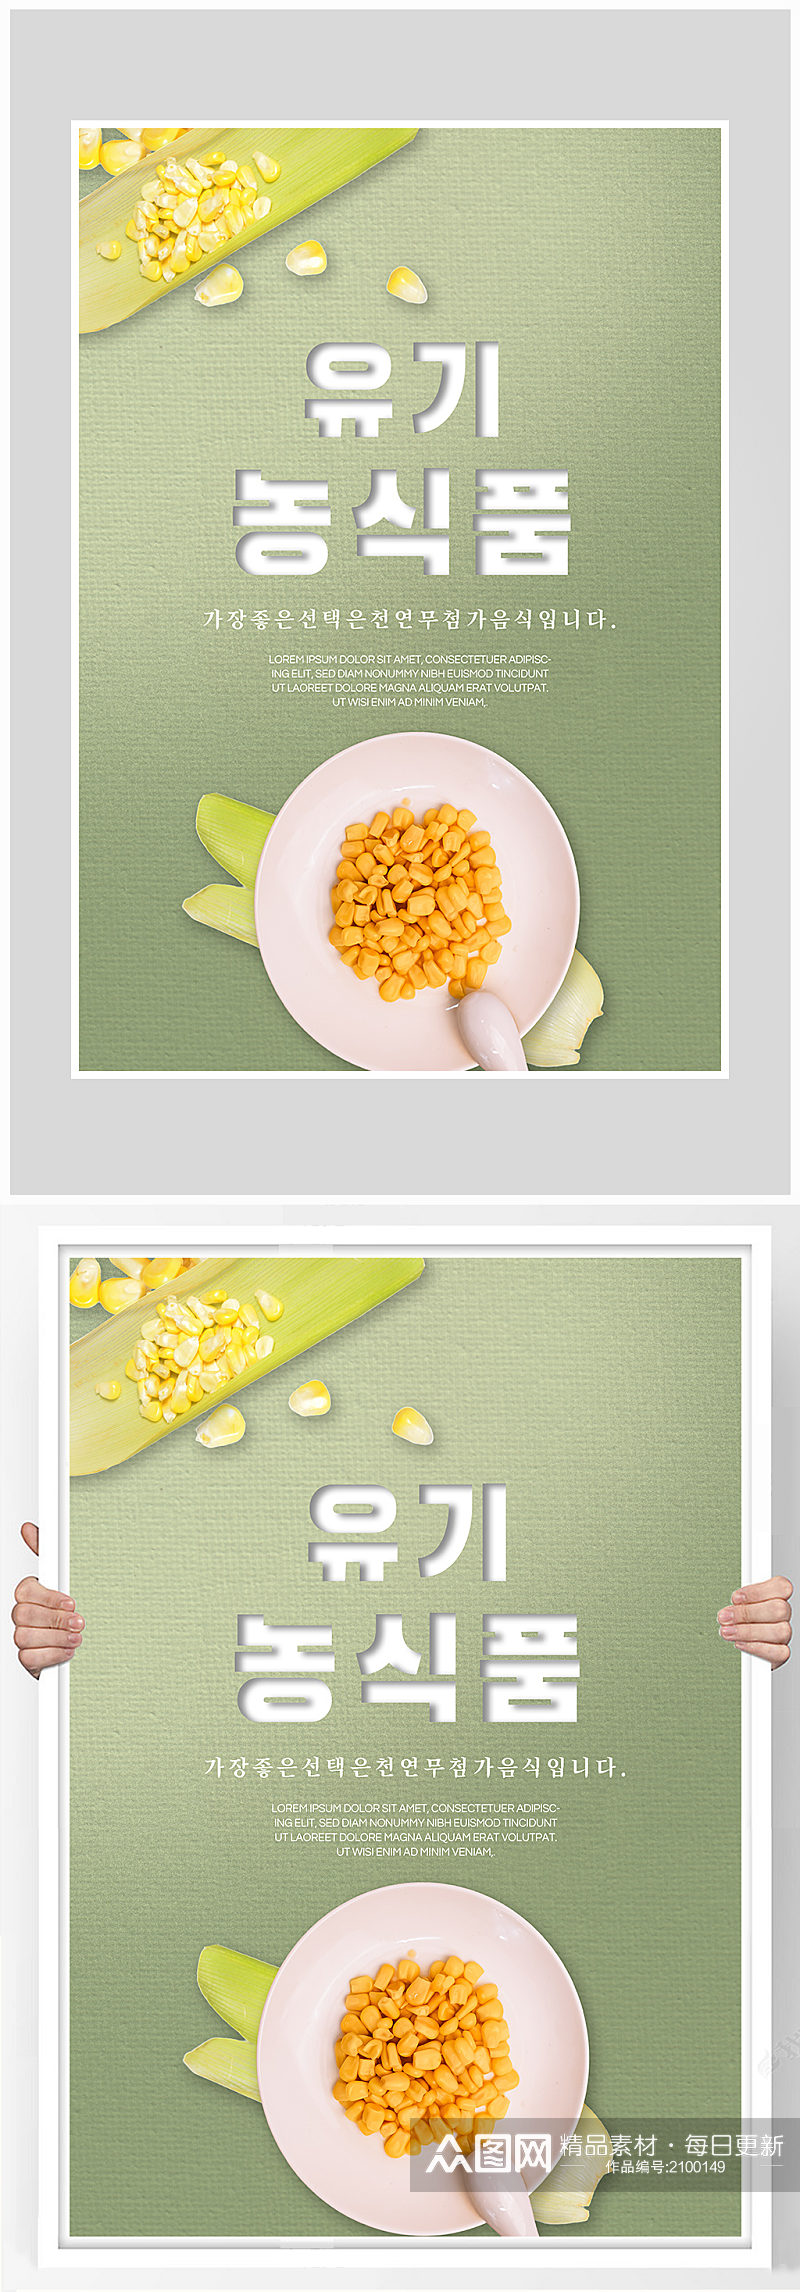 创意玉米蔬菜海报设计素材